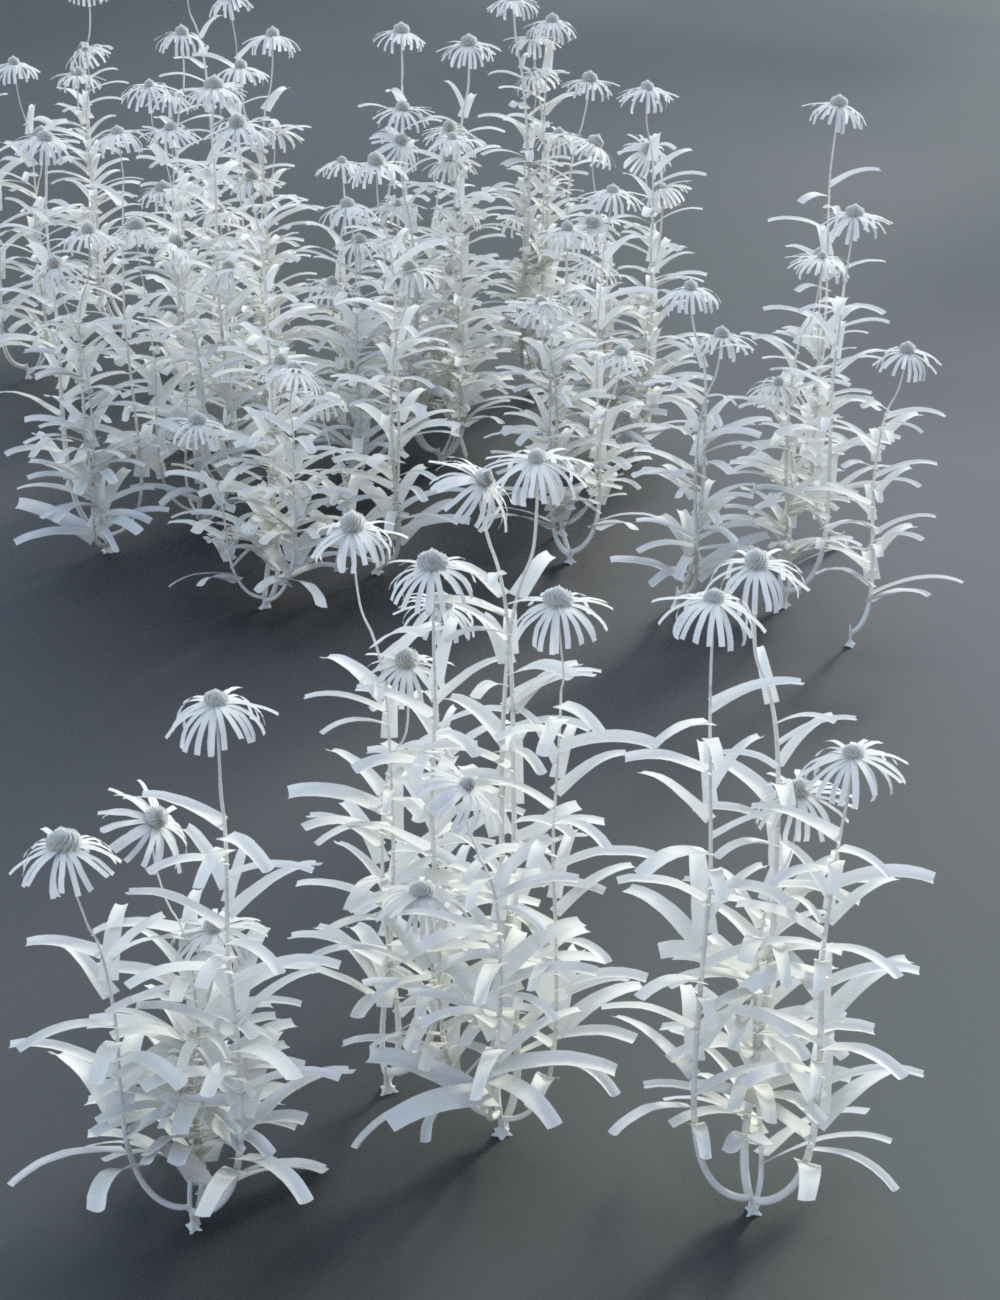 Garden Flowers - Cone Flowers by: MartinJFrost, 3D Models by Daz 3D